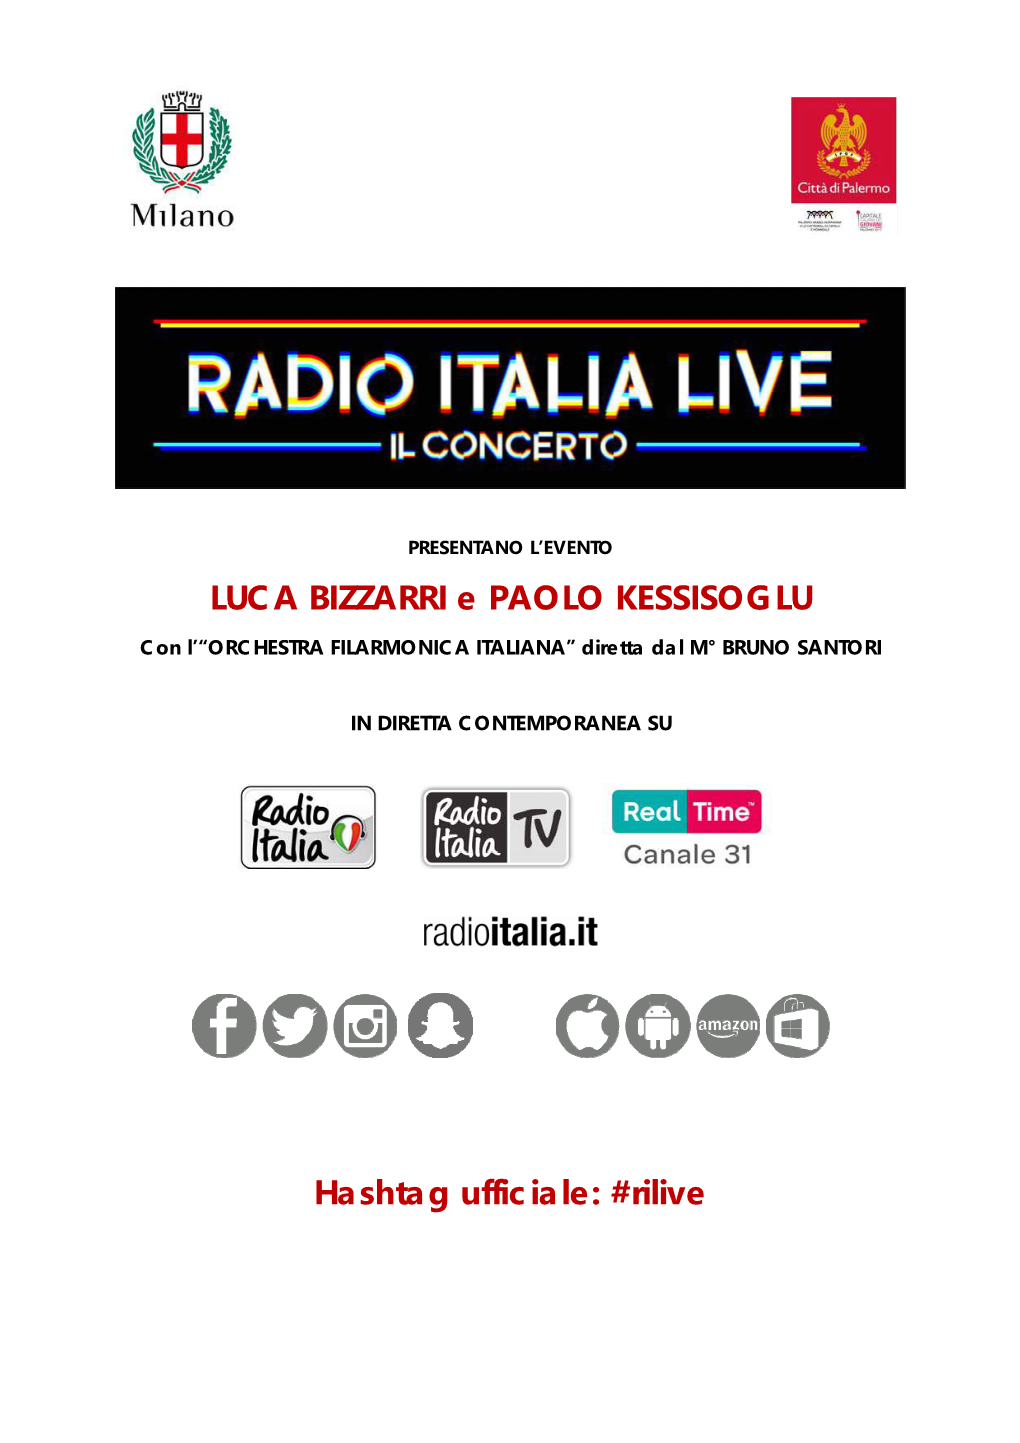 Concertone Radio Italia